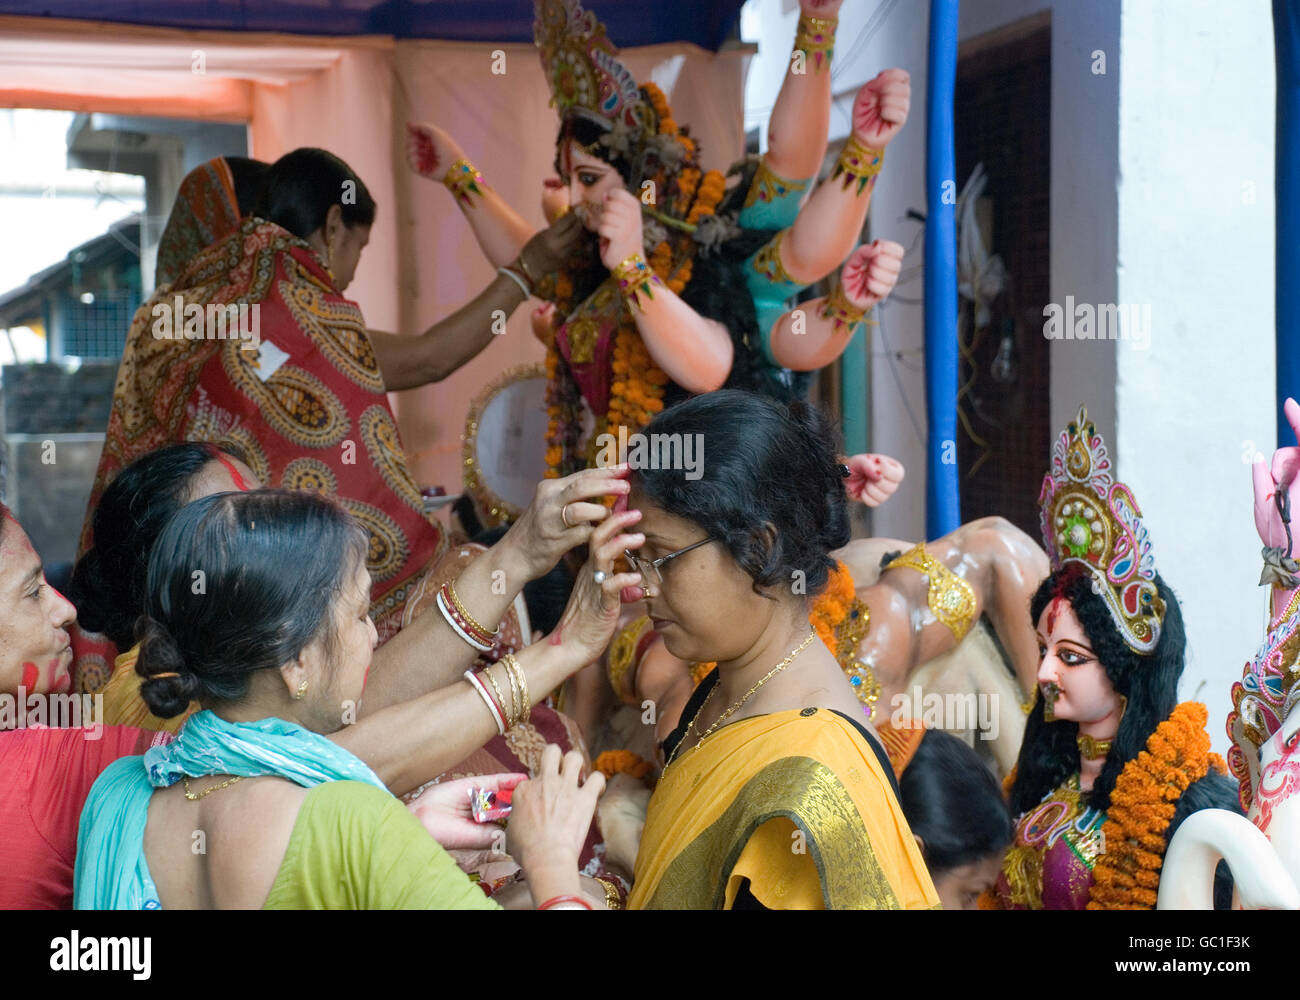 L'échange entre les femmes au foyer vermillion hindous à la fin de Durga Puja festival, Kolkata, West Bengal, India Banque D'Images